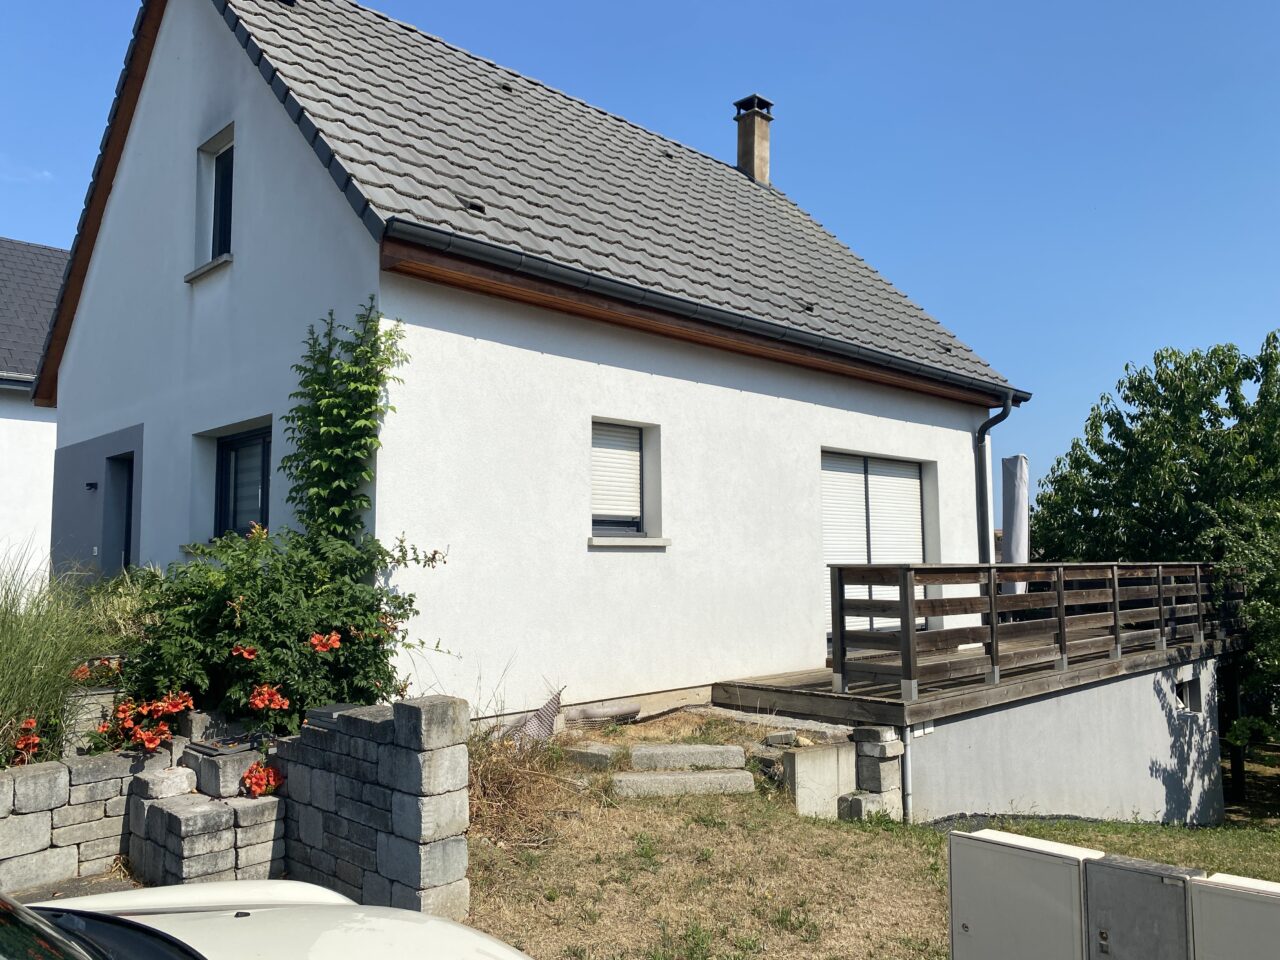 Weitbruch, belle maison récente 100m2 sur 4,7 ares. Vidéo disponible.